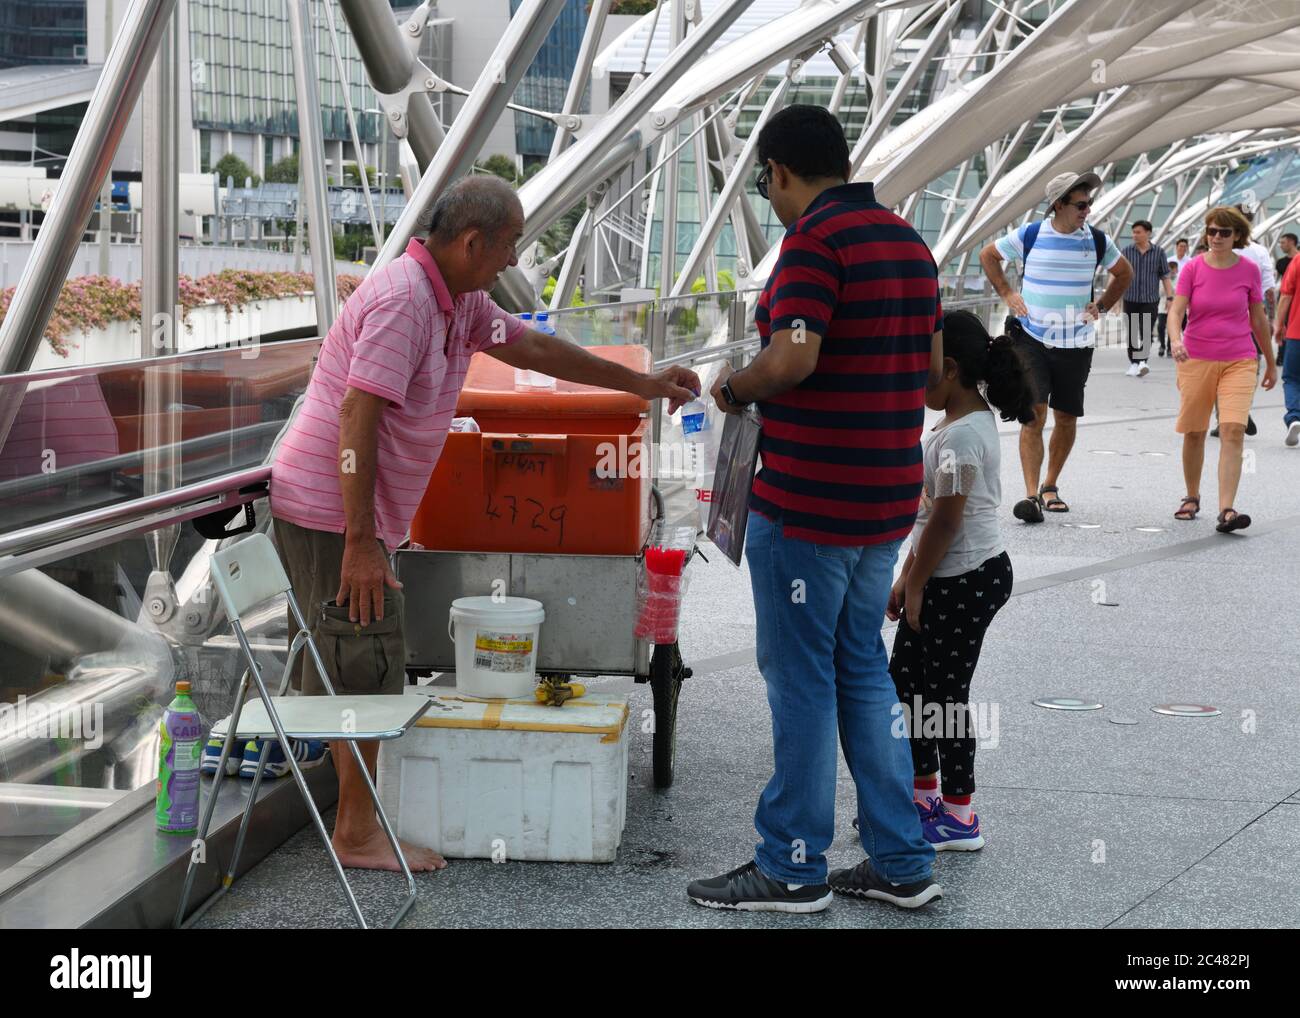 Ein Mann verkauft kaltes Wasser in Flaschen auf der Helix-Brücke in Singapur, Asien Stockfoto